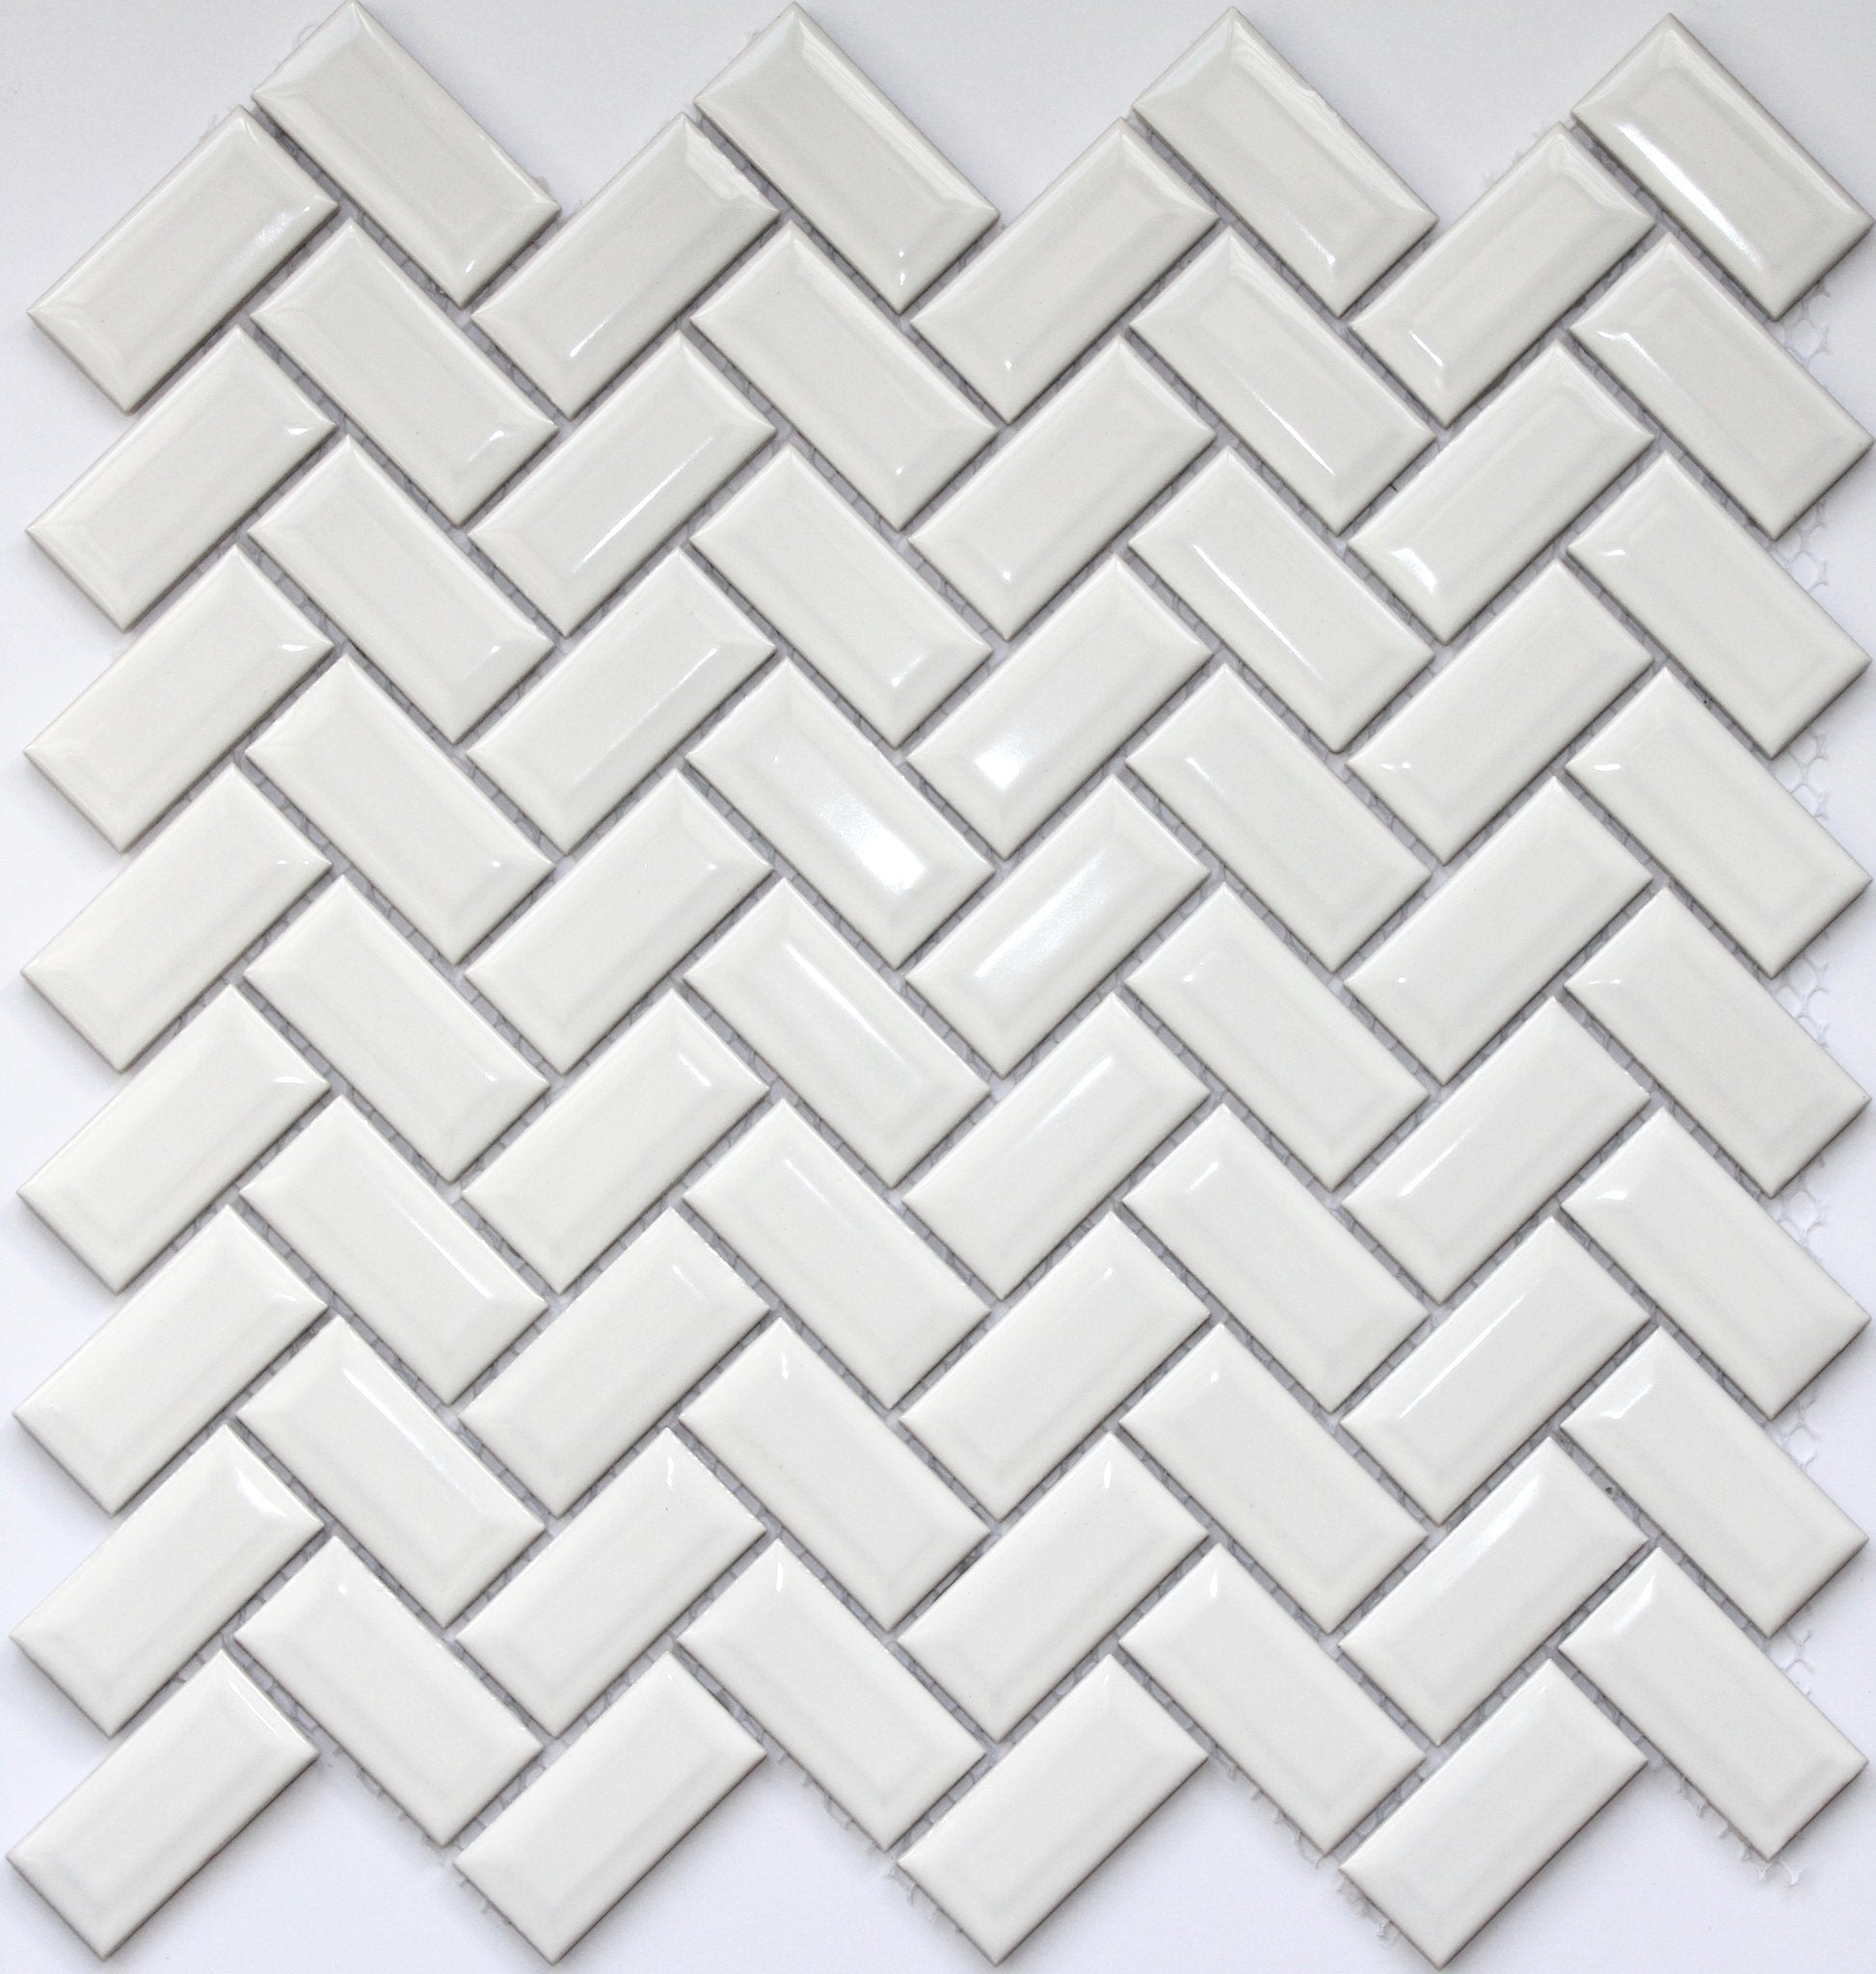 Gloss White Bevelled Herringbone Mosaic Tile 23x48mm